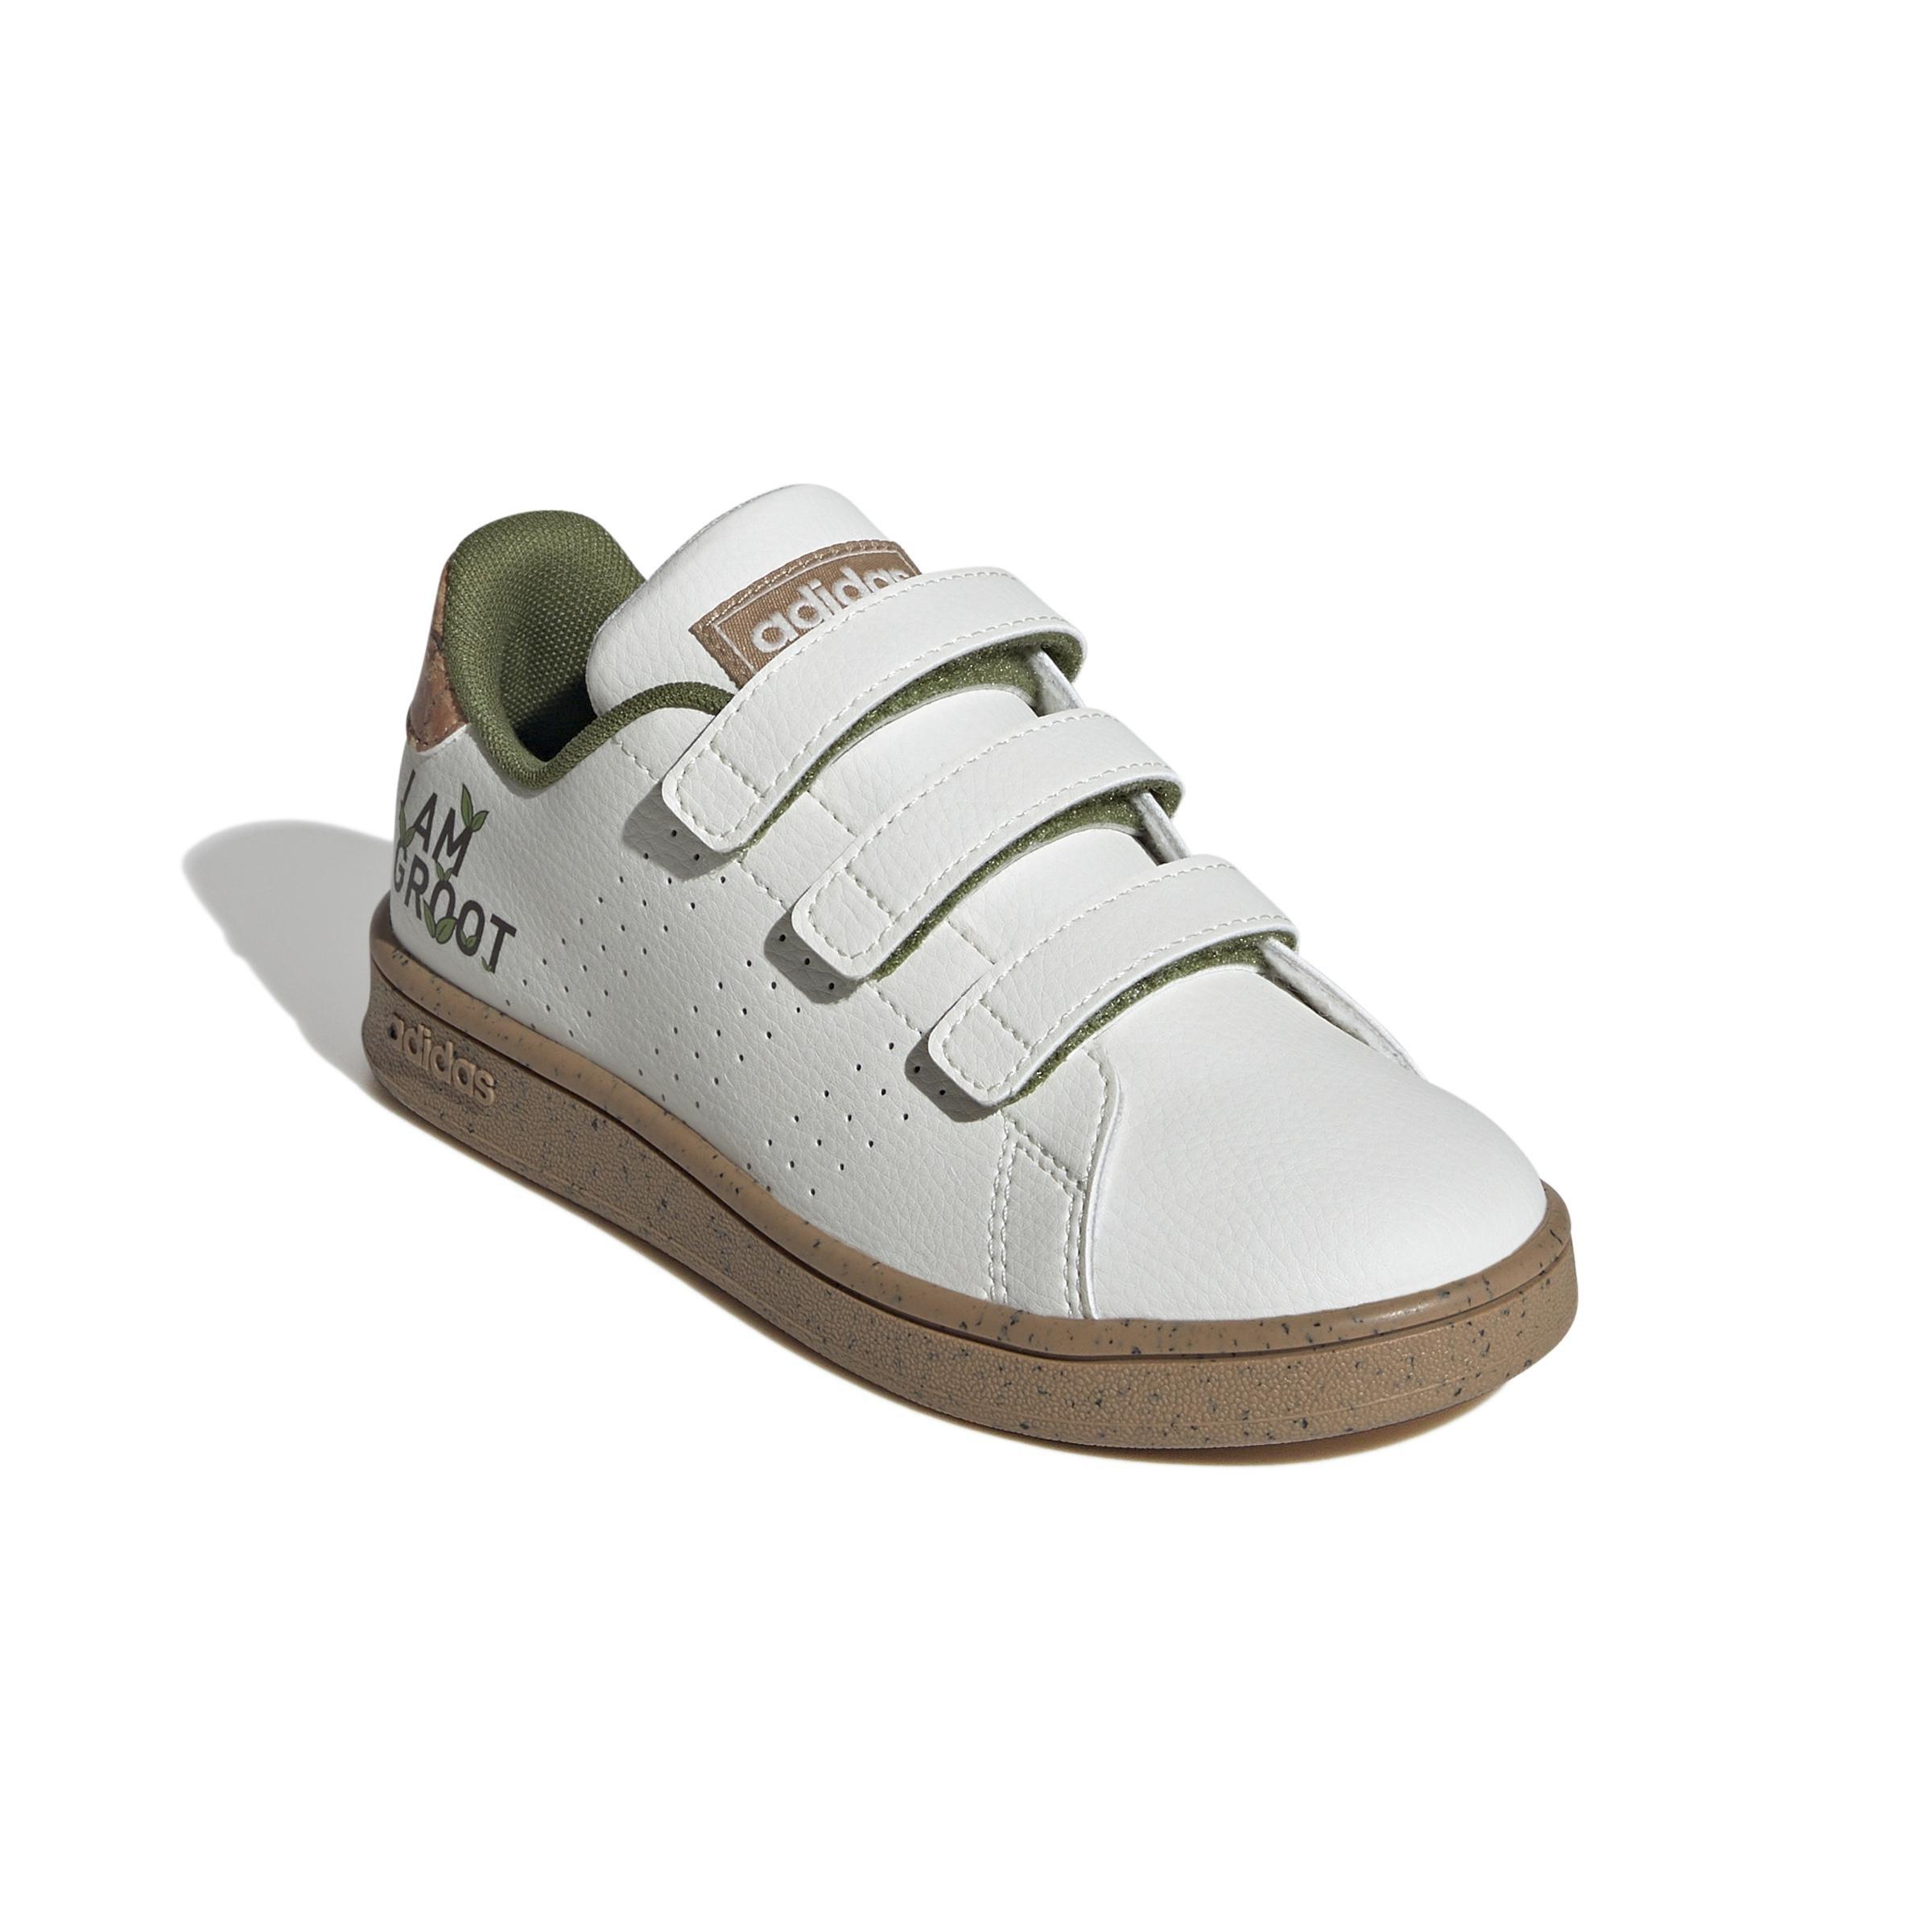 adidas - Advantage x Marvel Shoes Kids OWHITE/OWHITE/CARDBO Unisex Kids